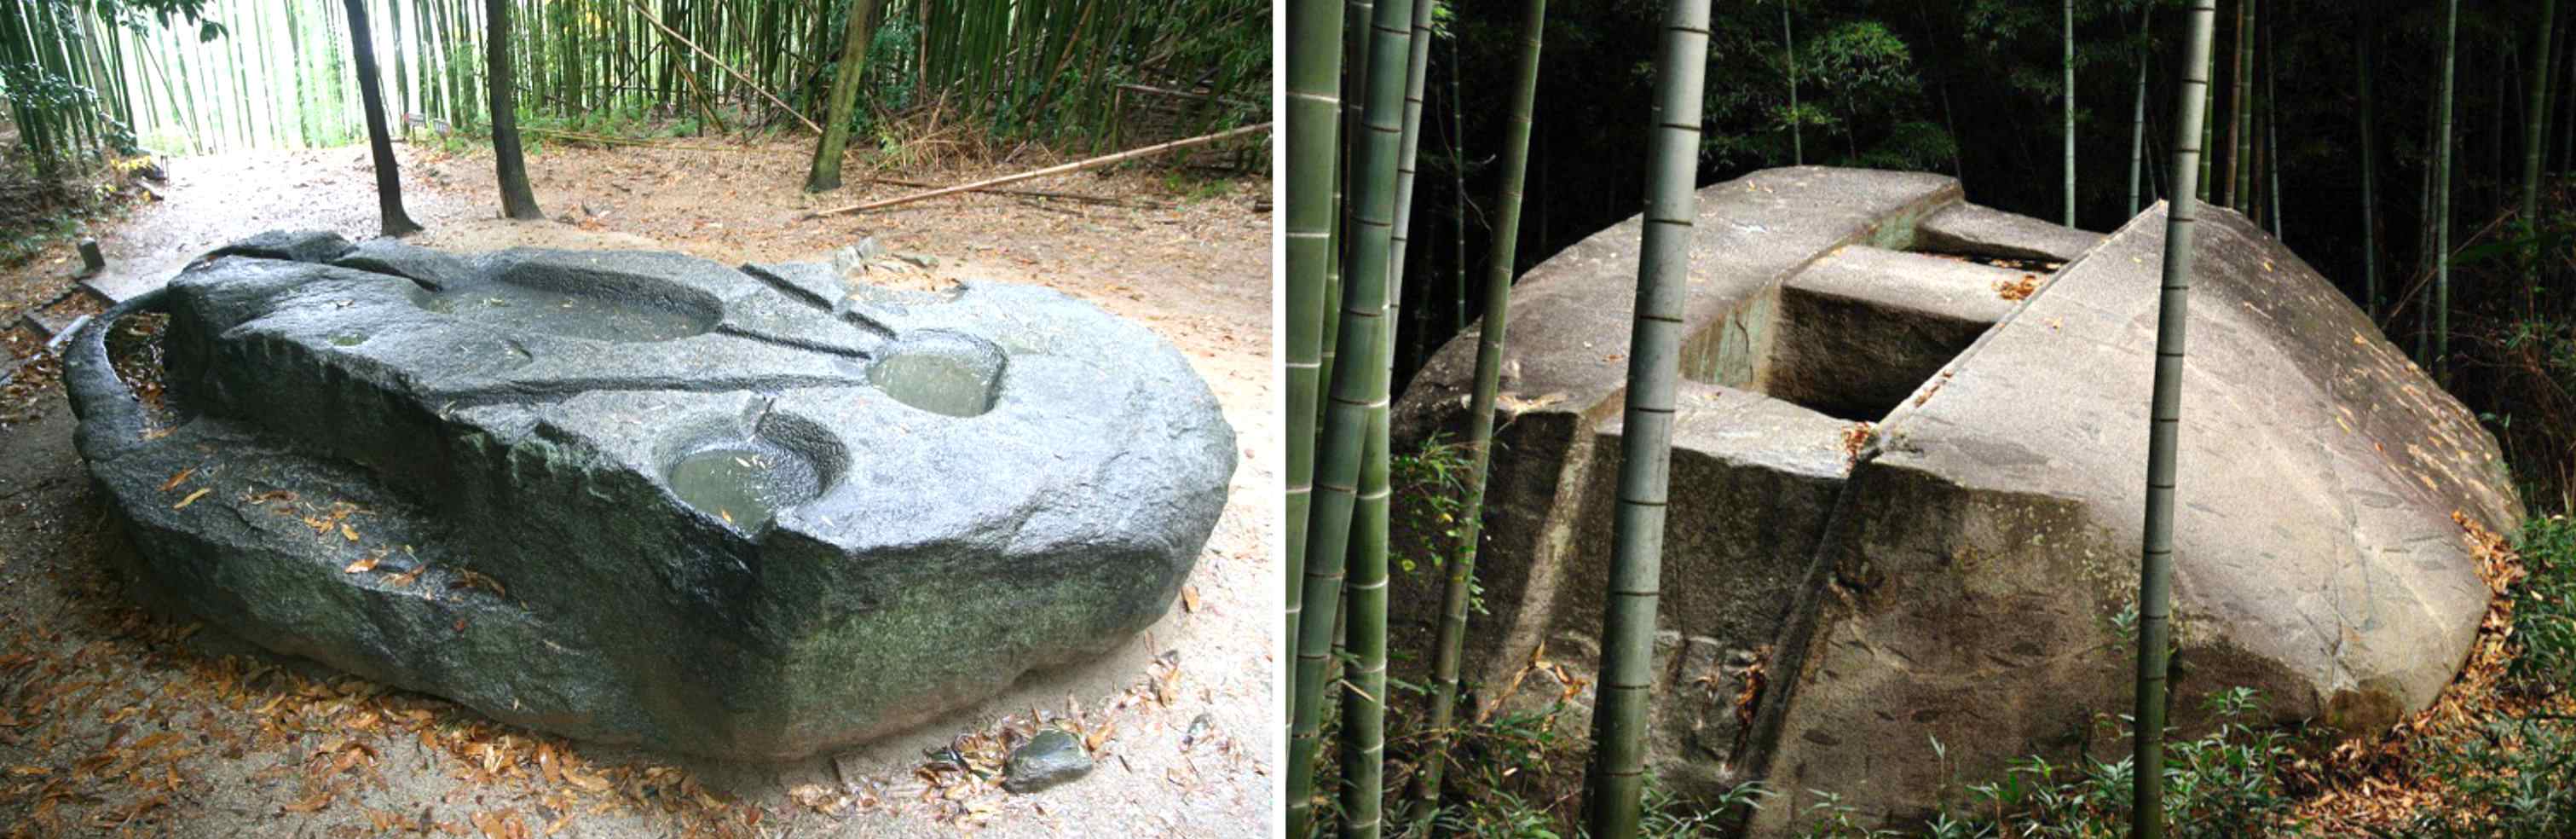 قدیم طریقہ کار: کیا جنات نے سینکڑوں ٹن وزنی اس جاپانی میگالتھ کو بنایا تھا؟ 3